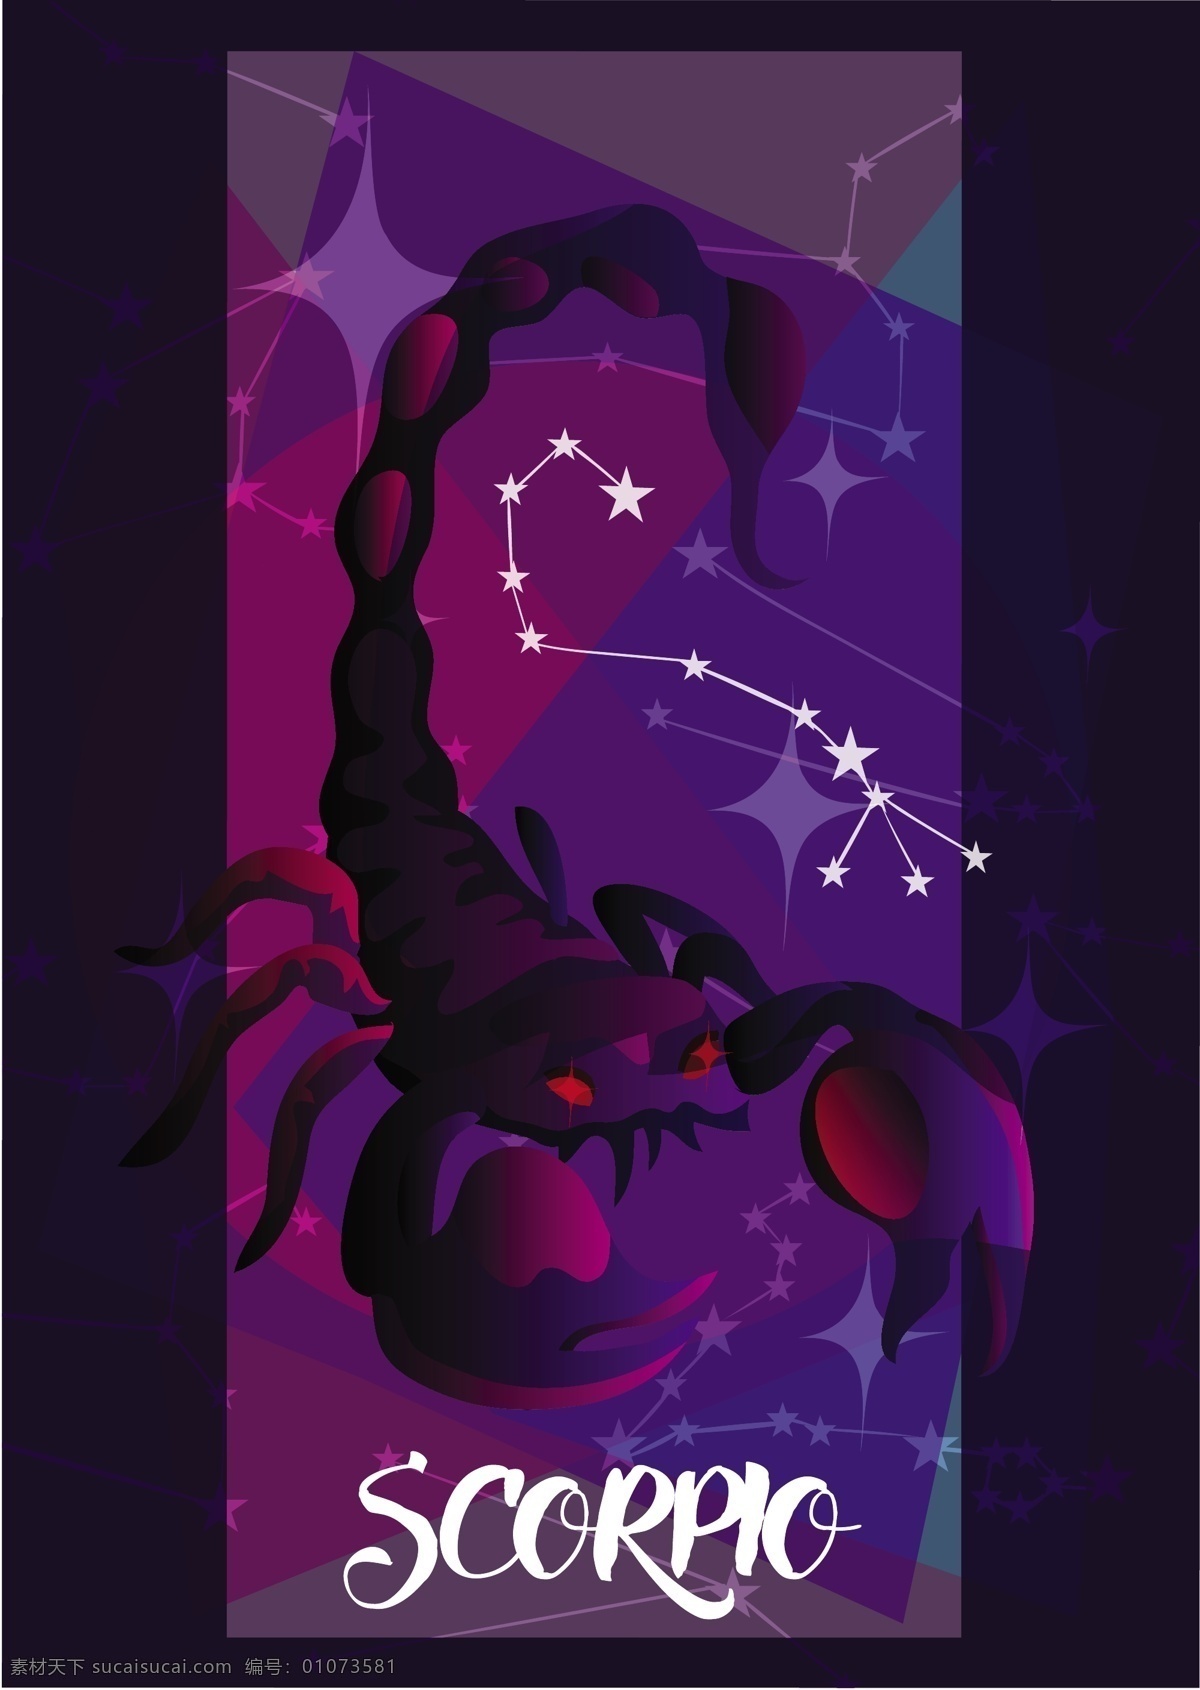 紫色 创意 蝎子 座 背景 图 广告背景 广告 背景素材 底纹背景 蝎子座 星座 可爱 五角星 漂亮